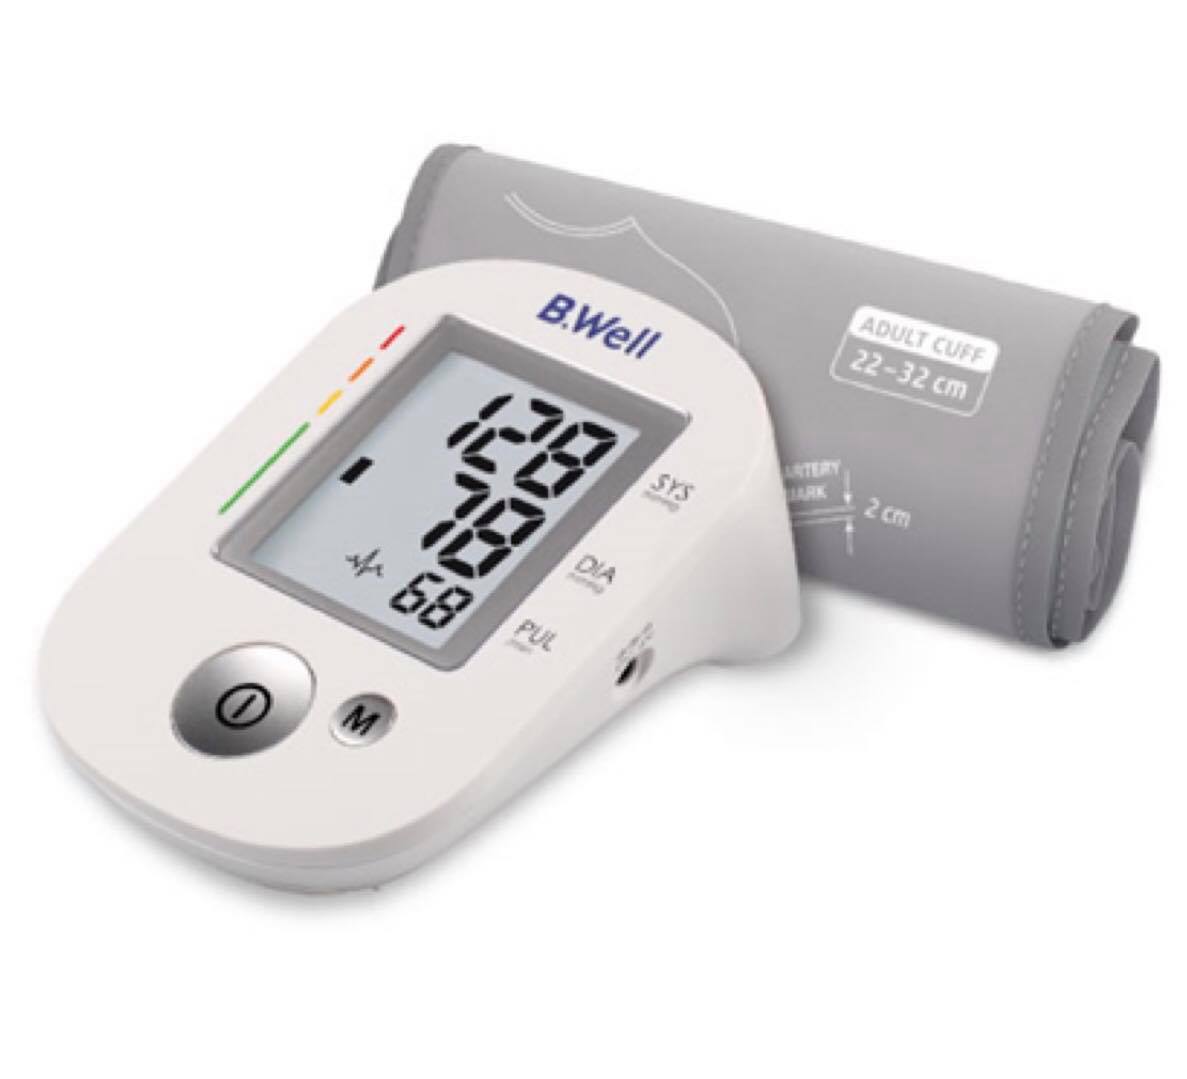 Máy đo huyết áp cao cấp Bwell PRO 35 ( Nhập khẩu 100% từ Thụy Sĩ )-Tặng kèm Adaptor chính hãng